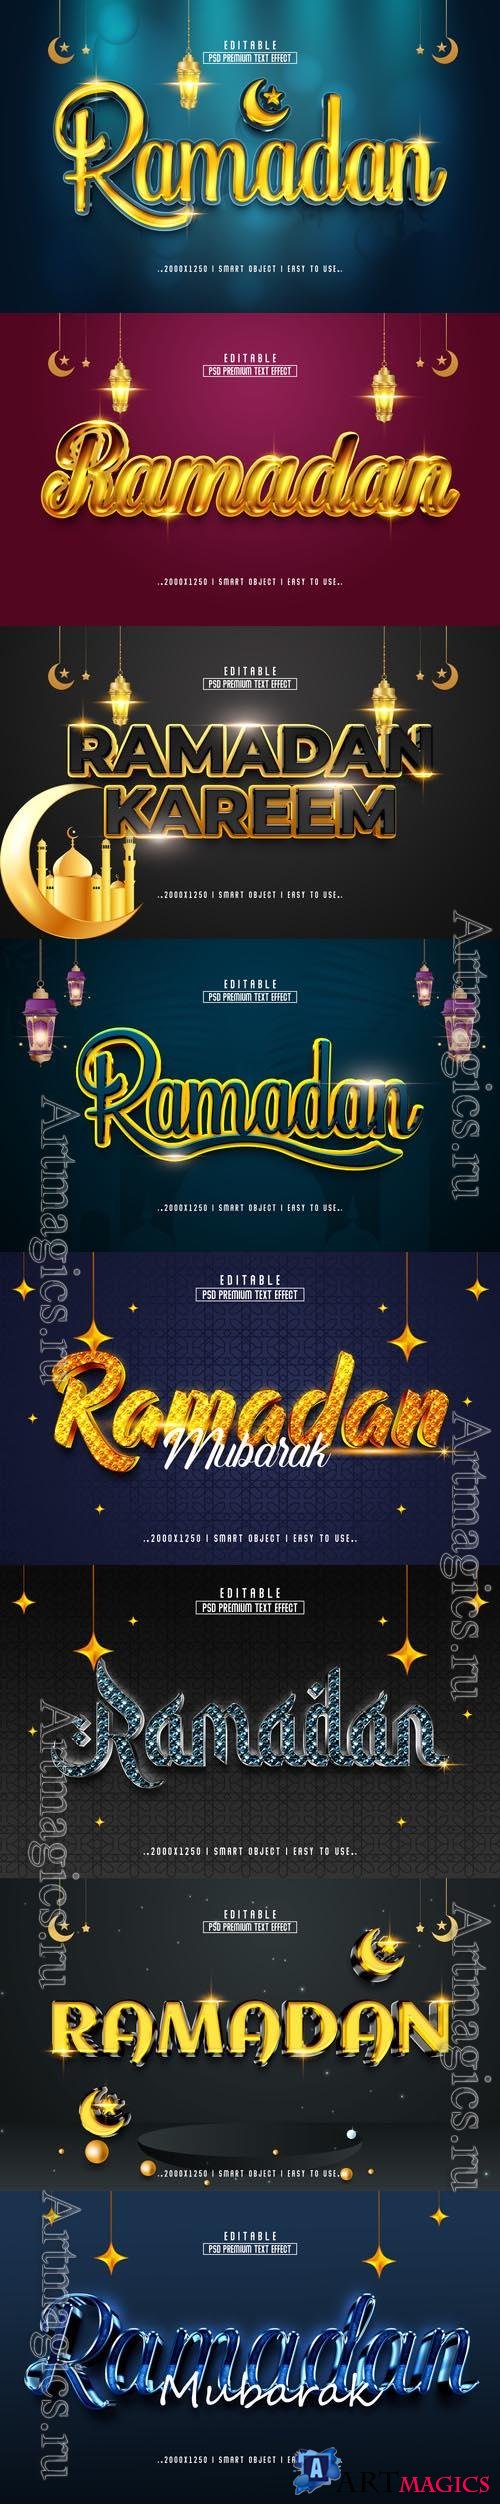 8 Psd Ramadan style text effect editable set vol 1